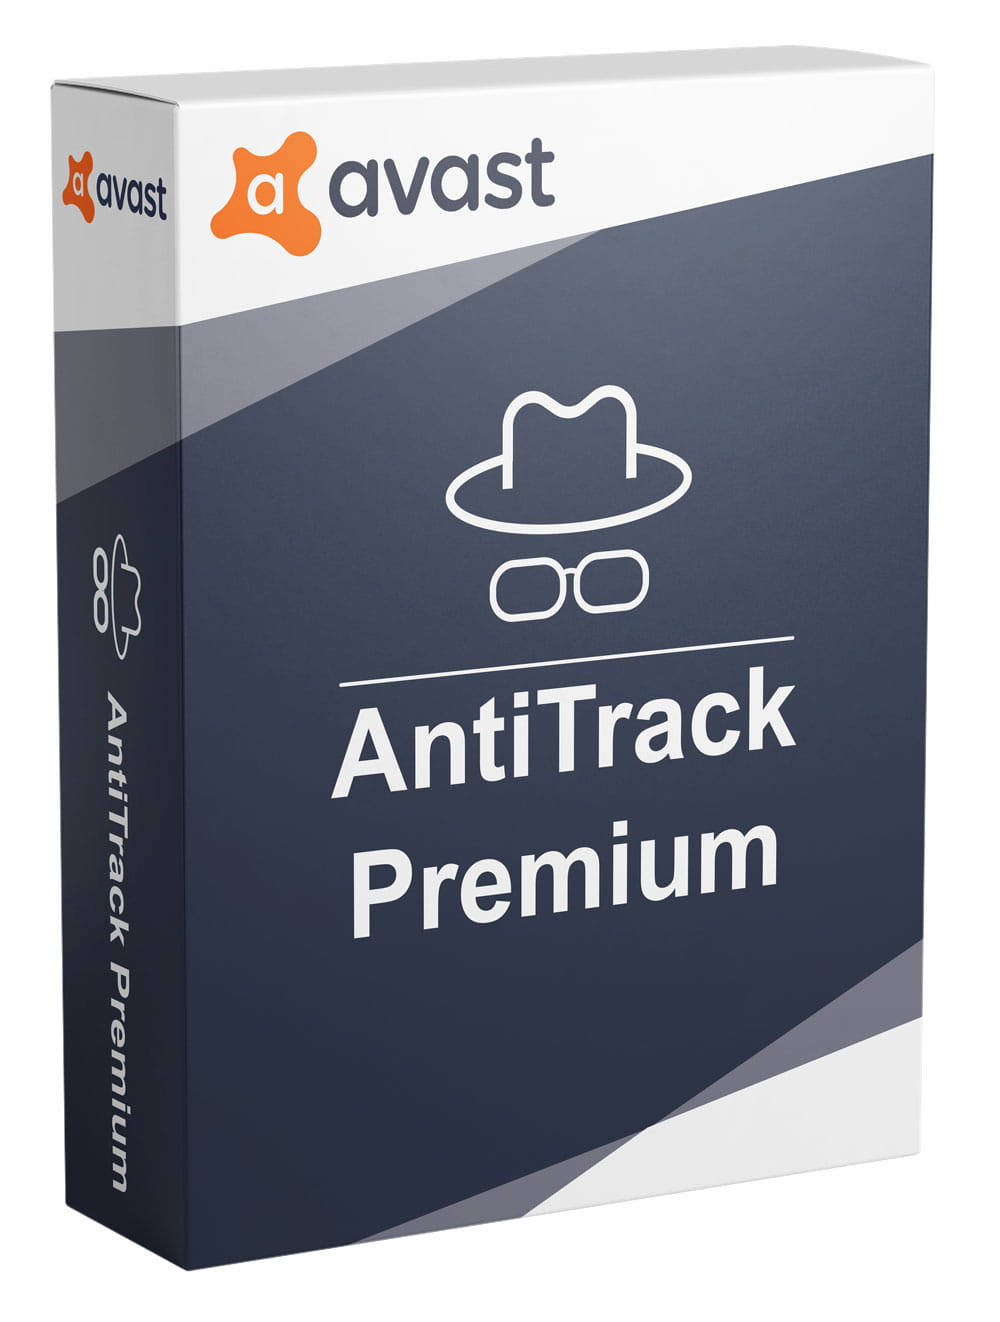 Avast Antitrack Premium olcsón jogtiszta szoftver rendelés termékkulcsok